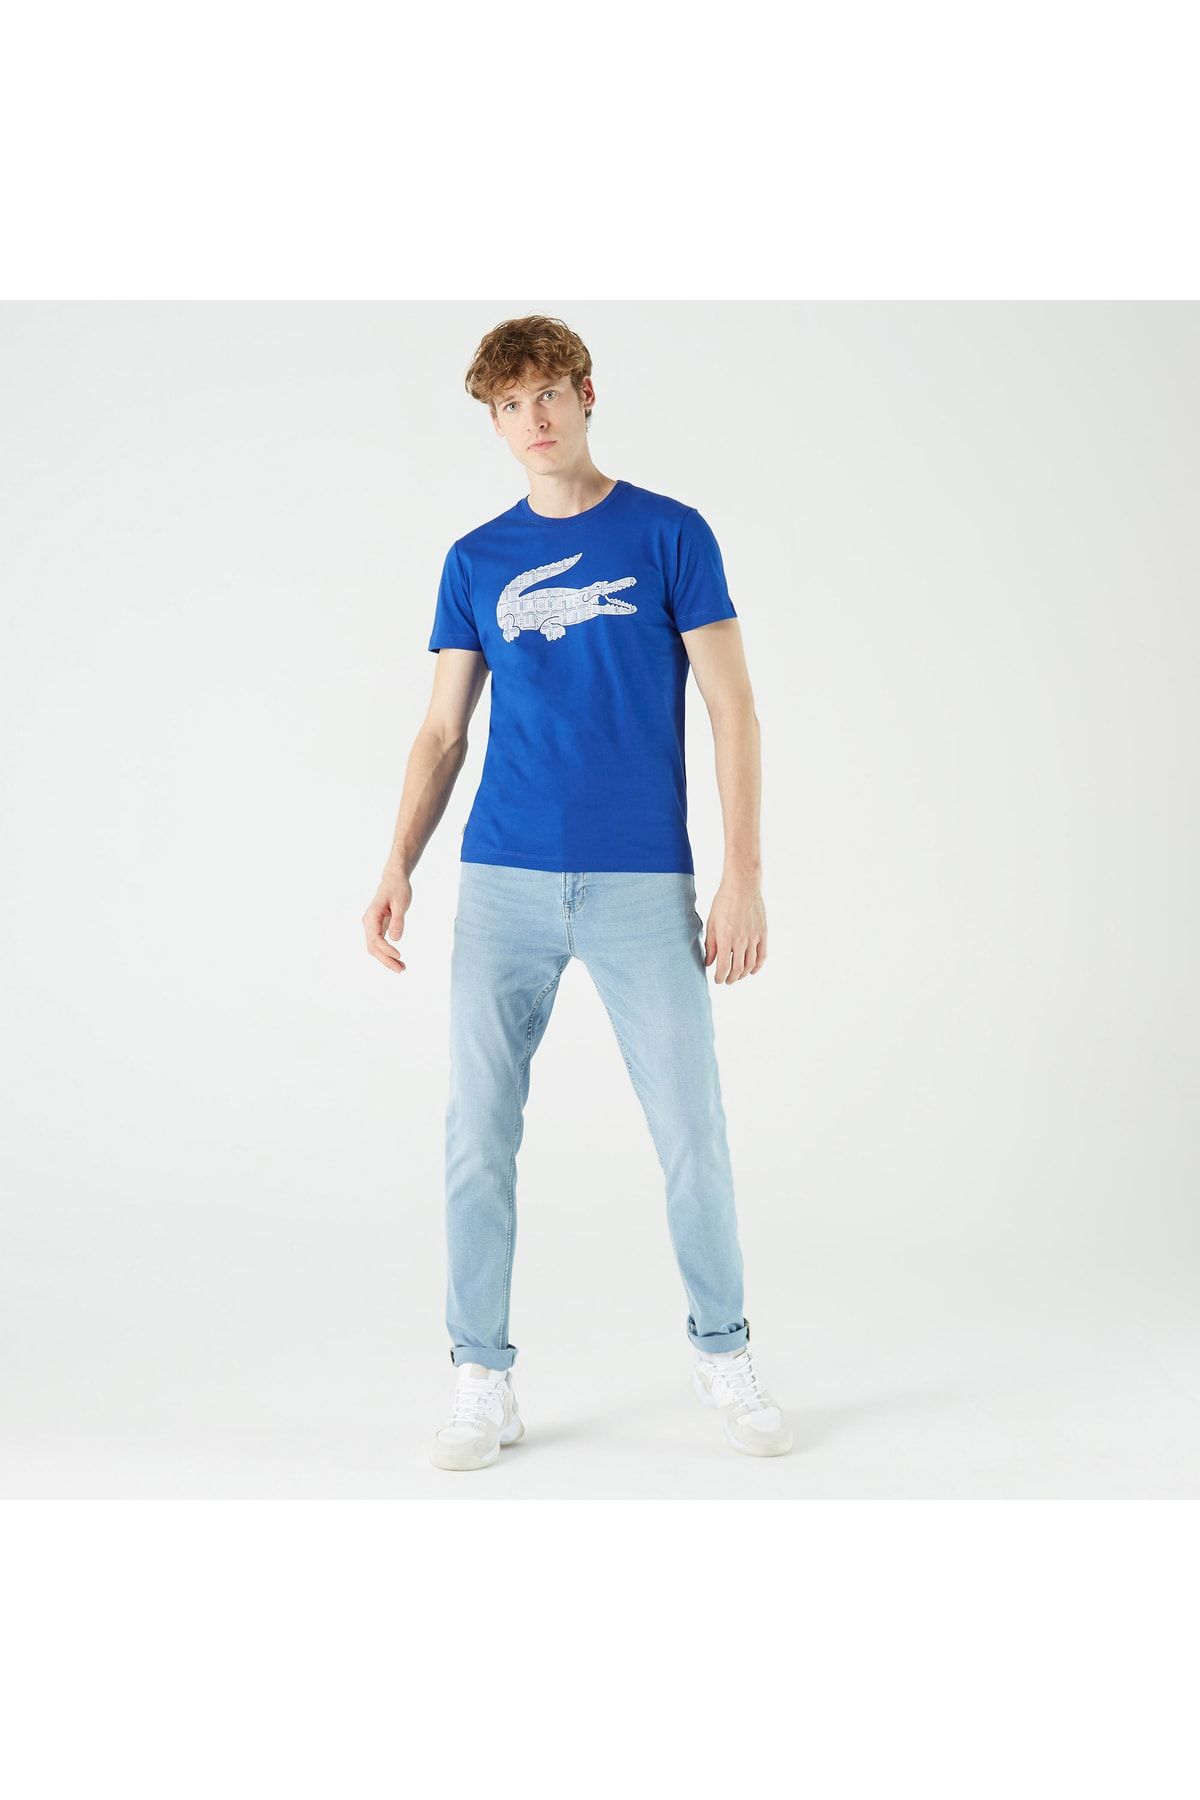 Lacoste یقه دوچرخه باریک مردانه تی شرت آبی چاپ شده TH0208